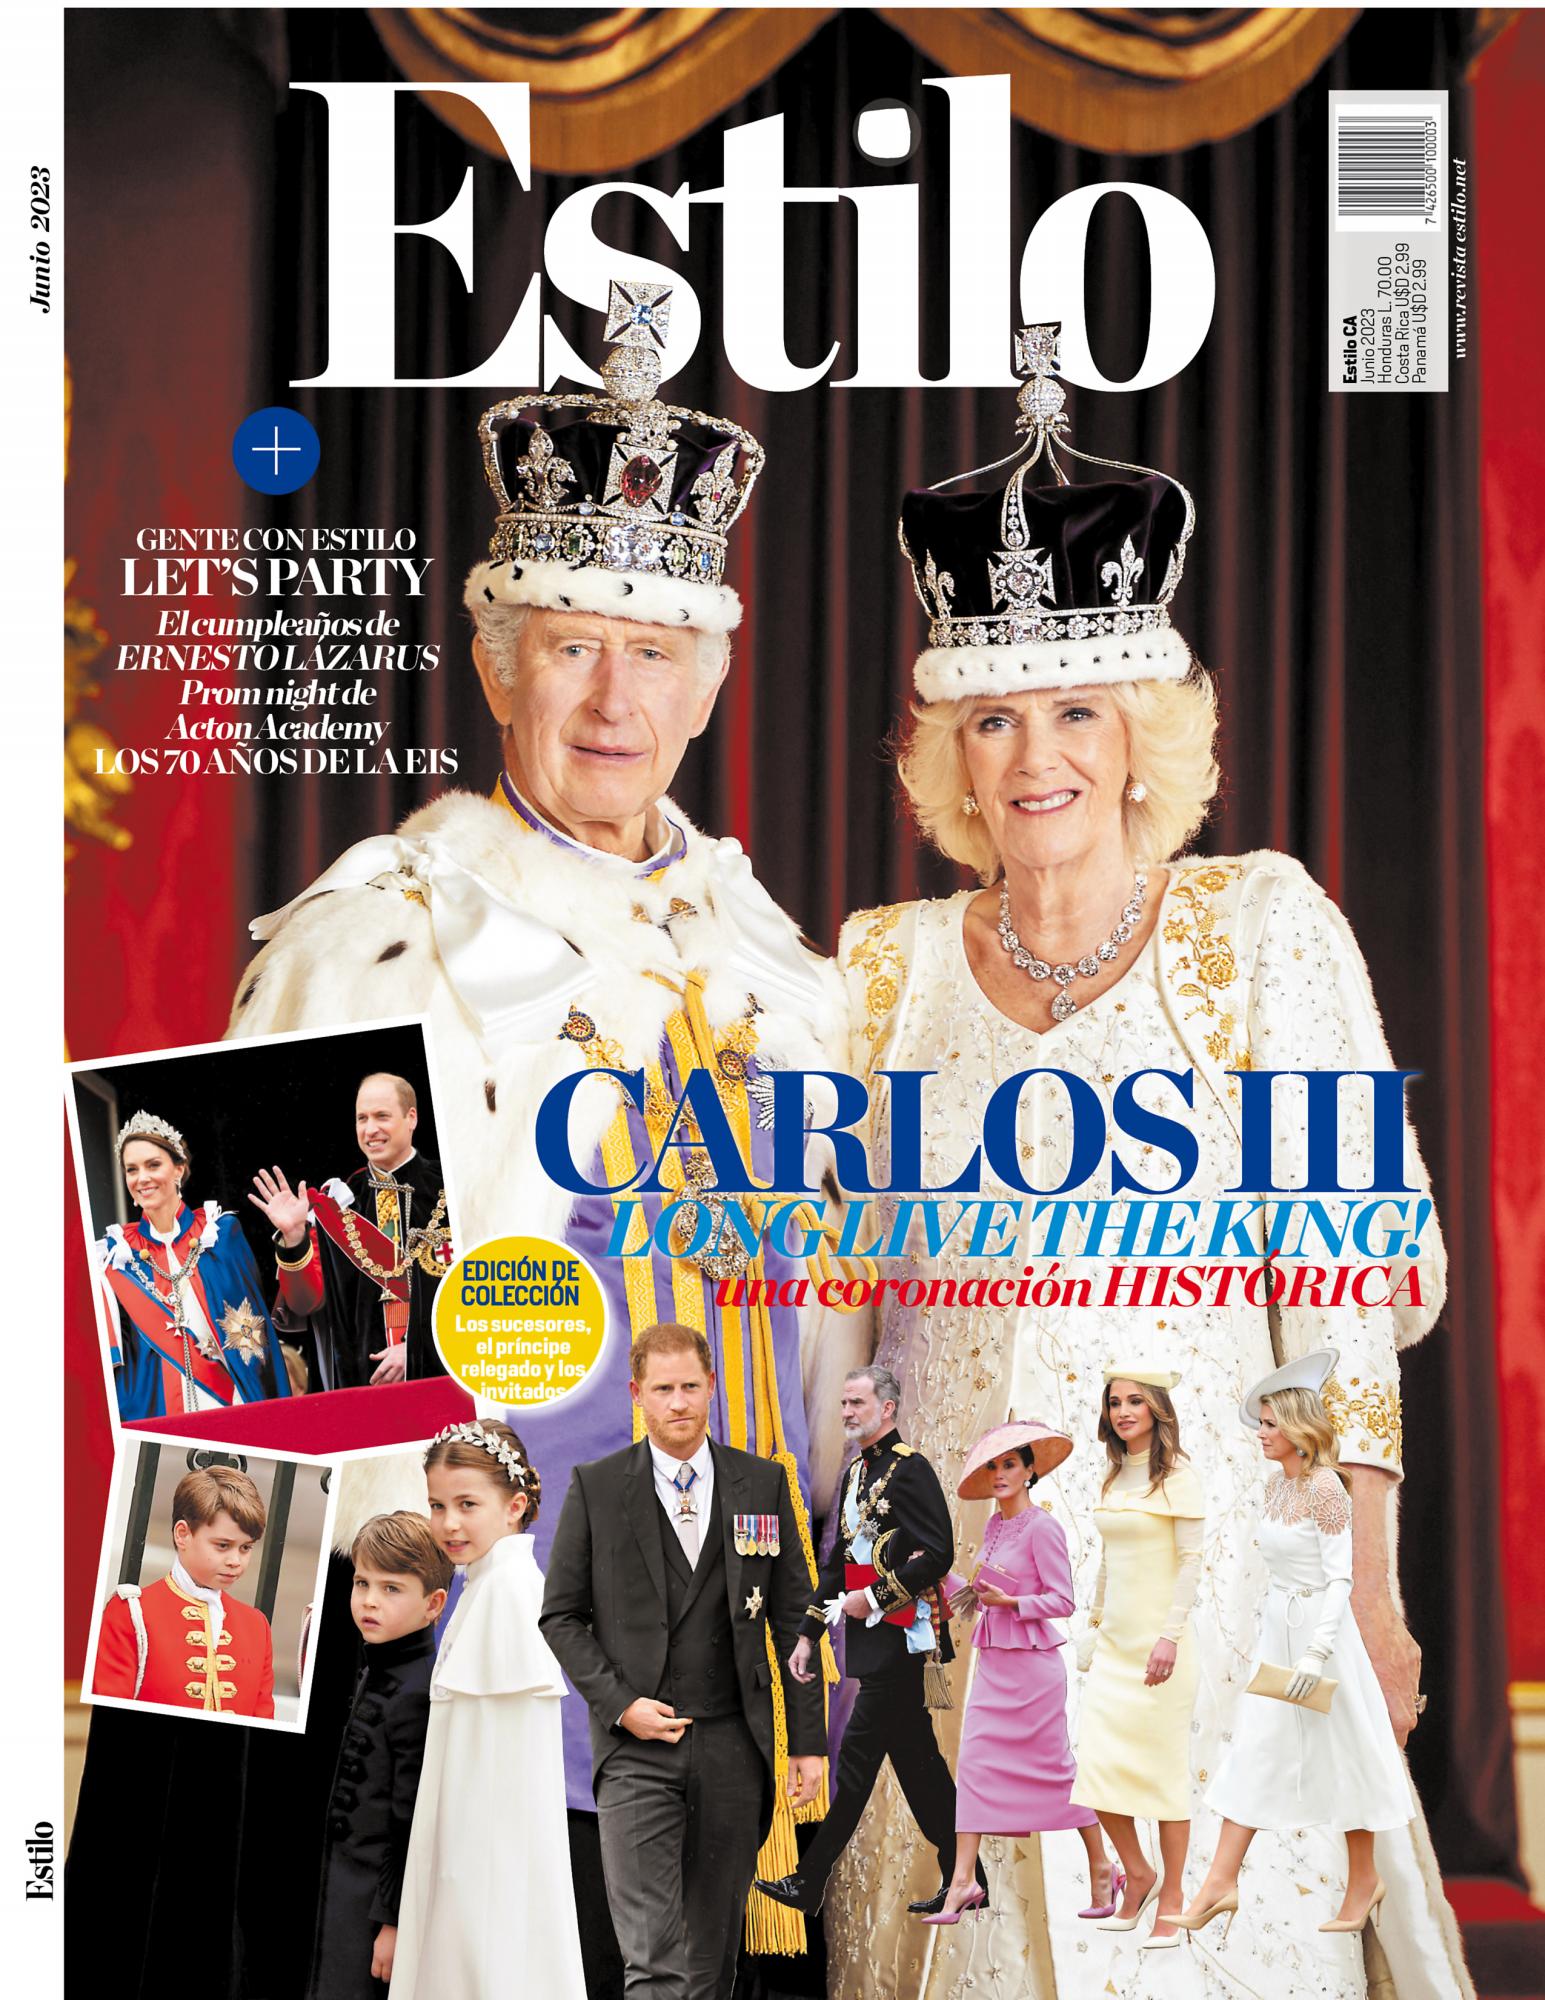 Carlos III: Long Live The King! Una coronación histórica